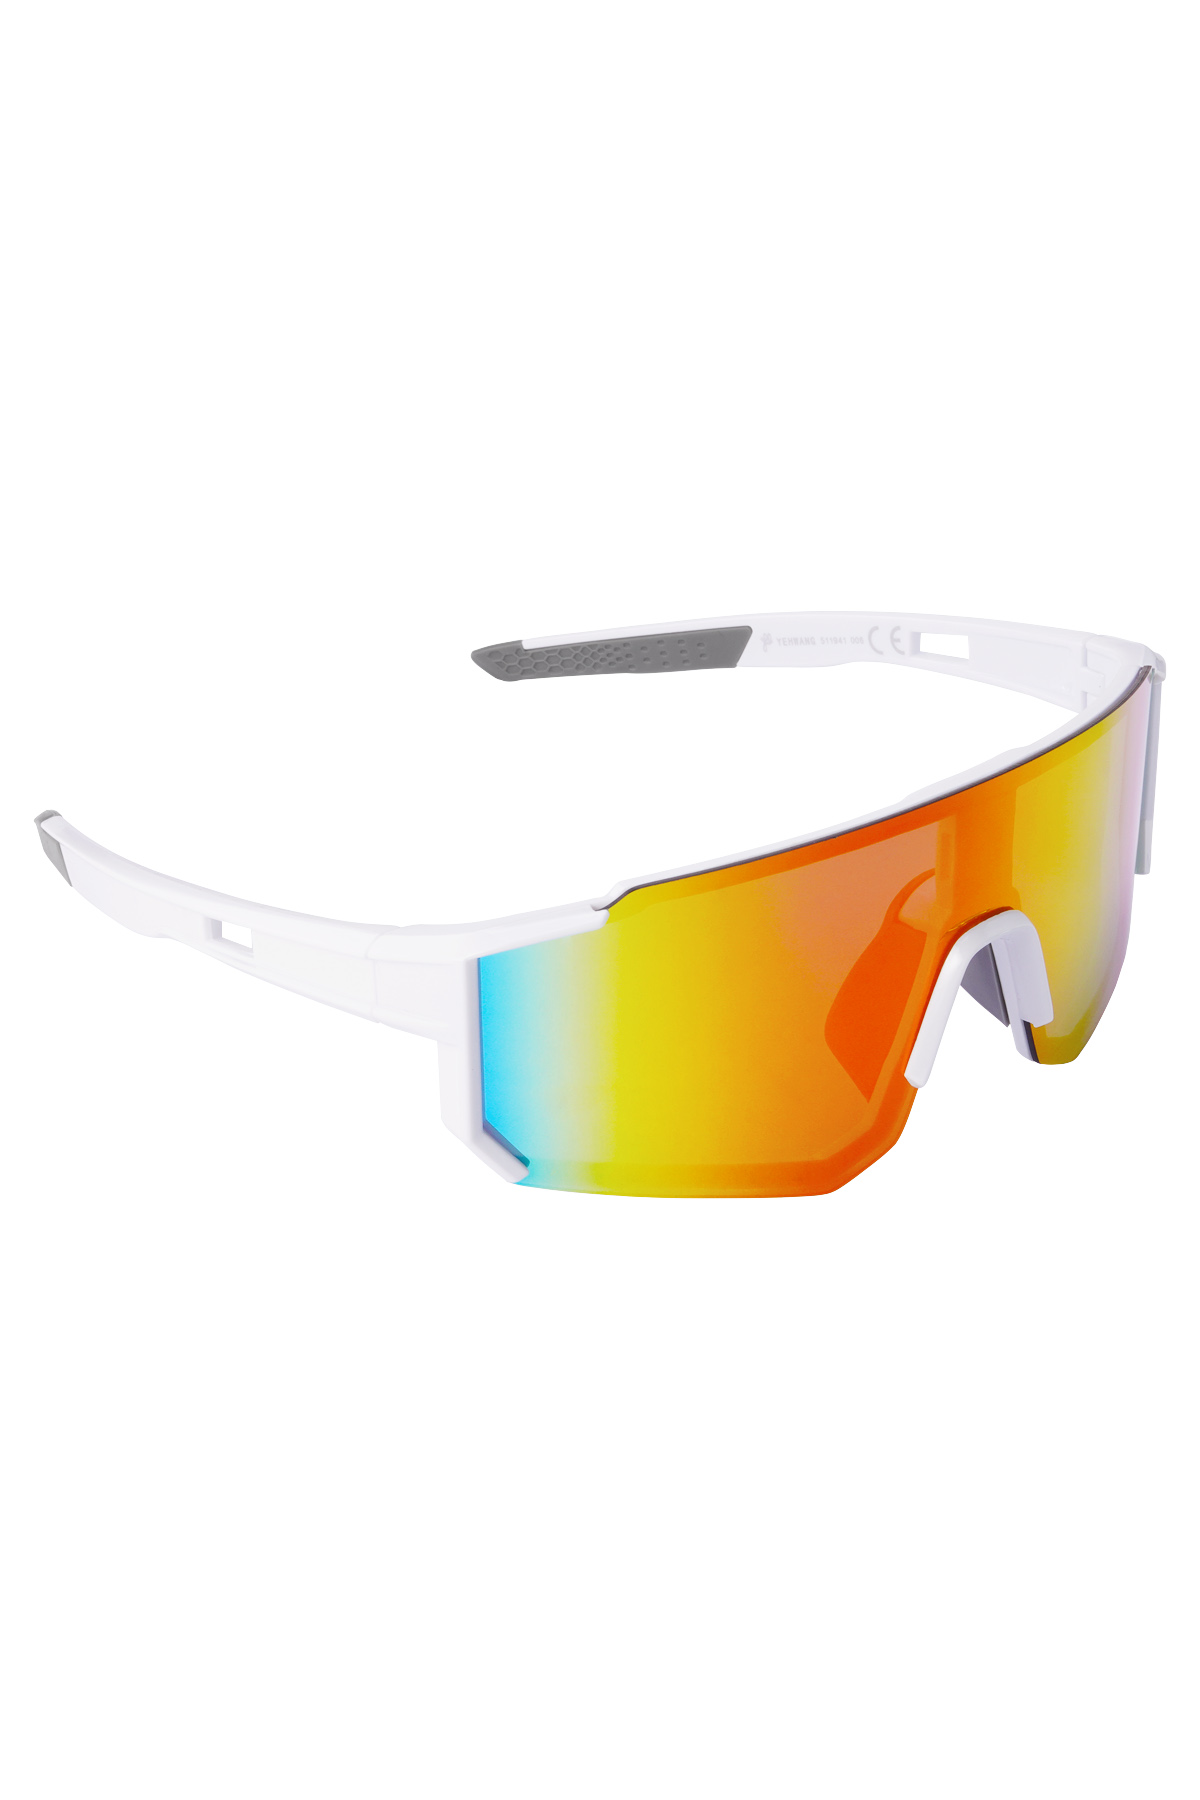 Güneş gözlüğü geleceği - beyaz/gri/renkli h5 